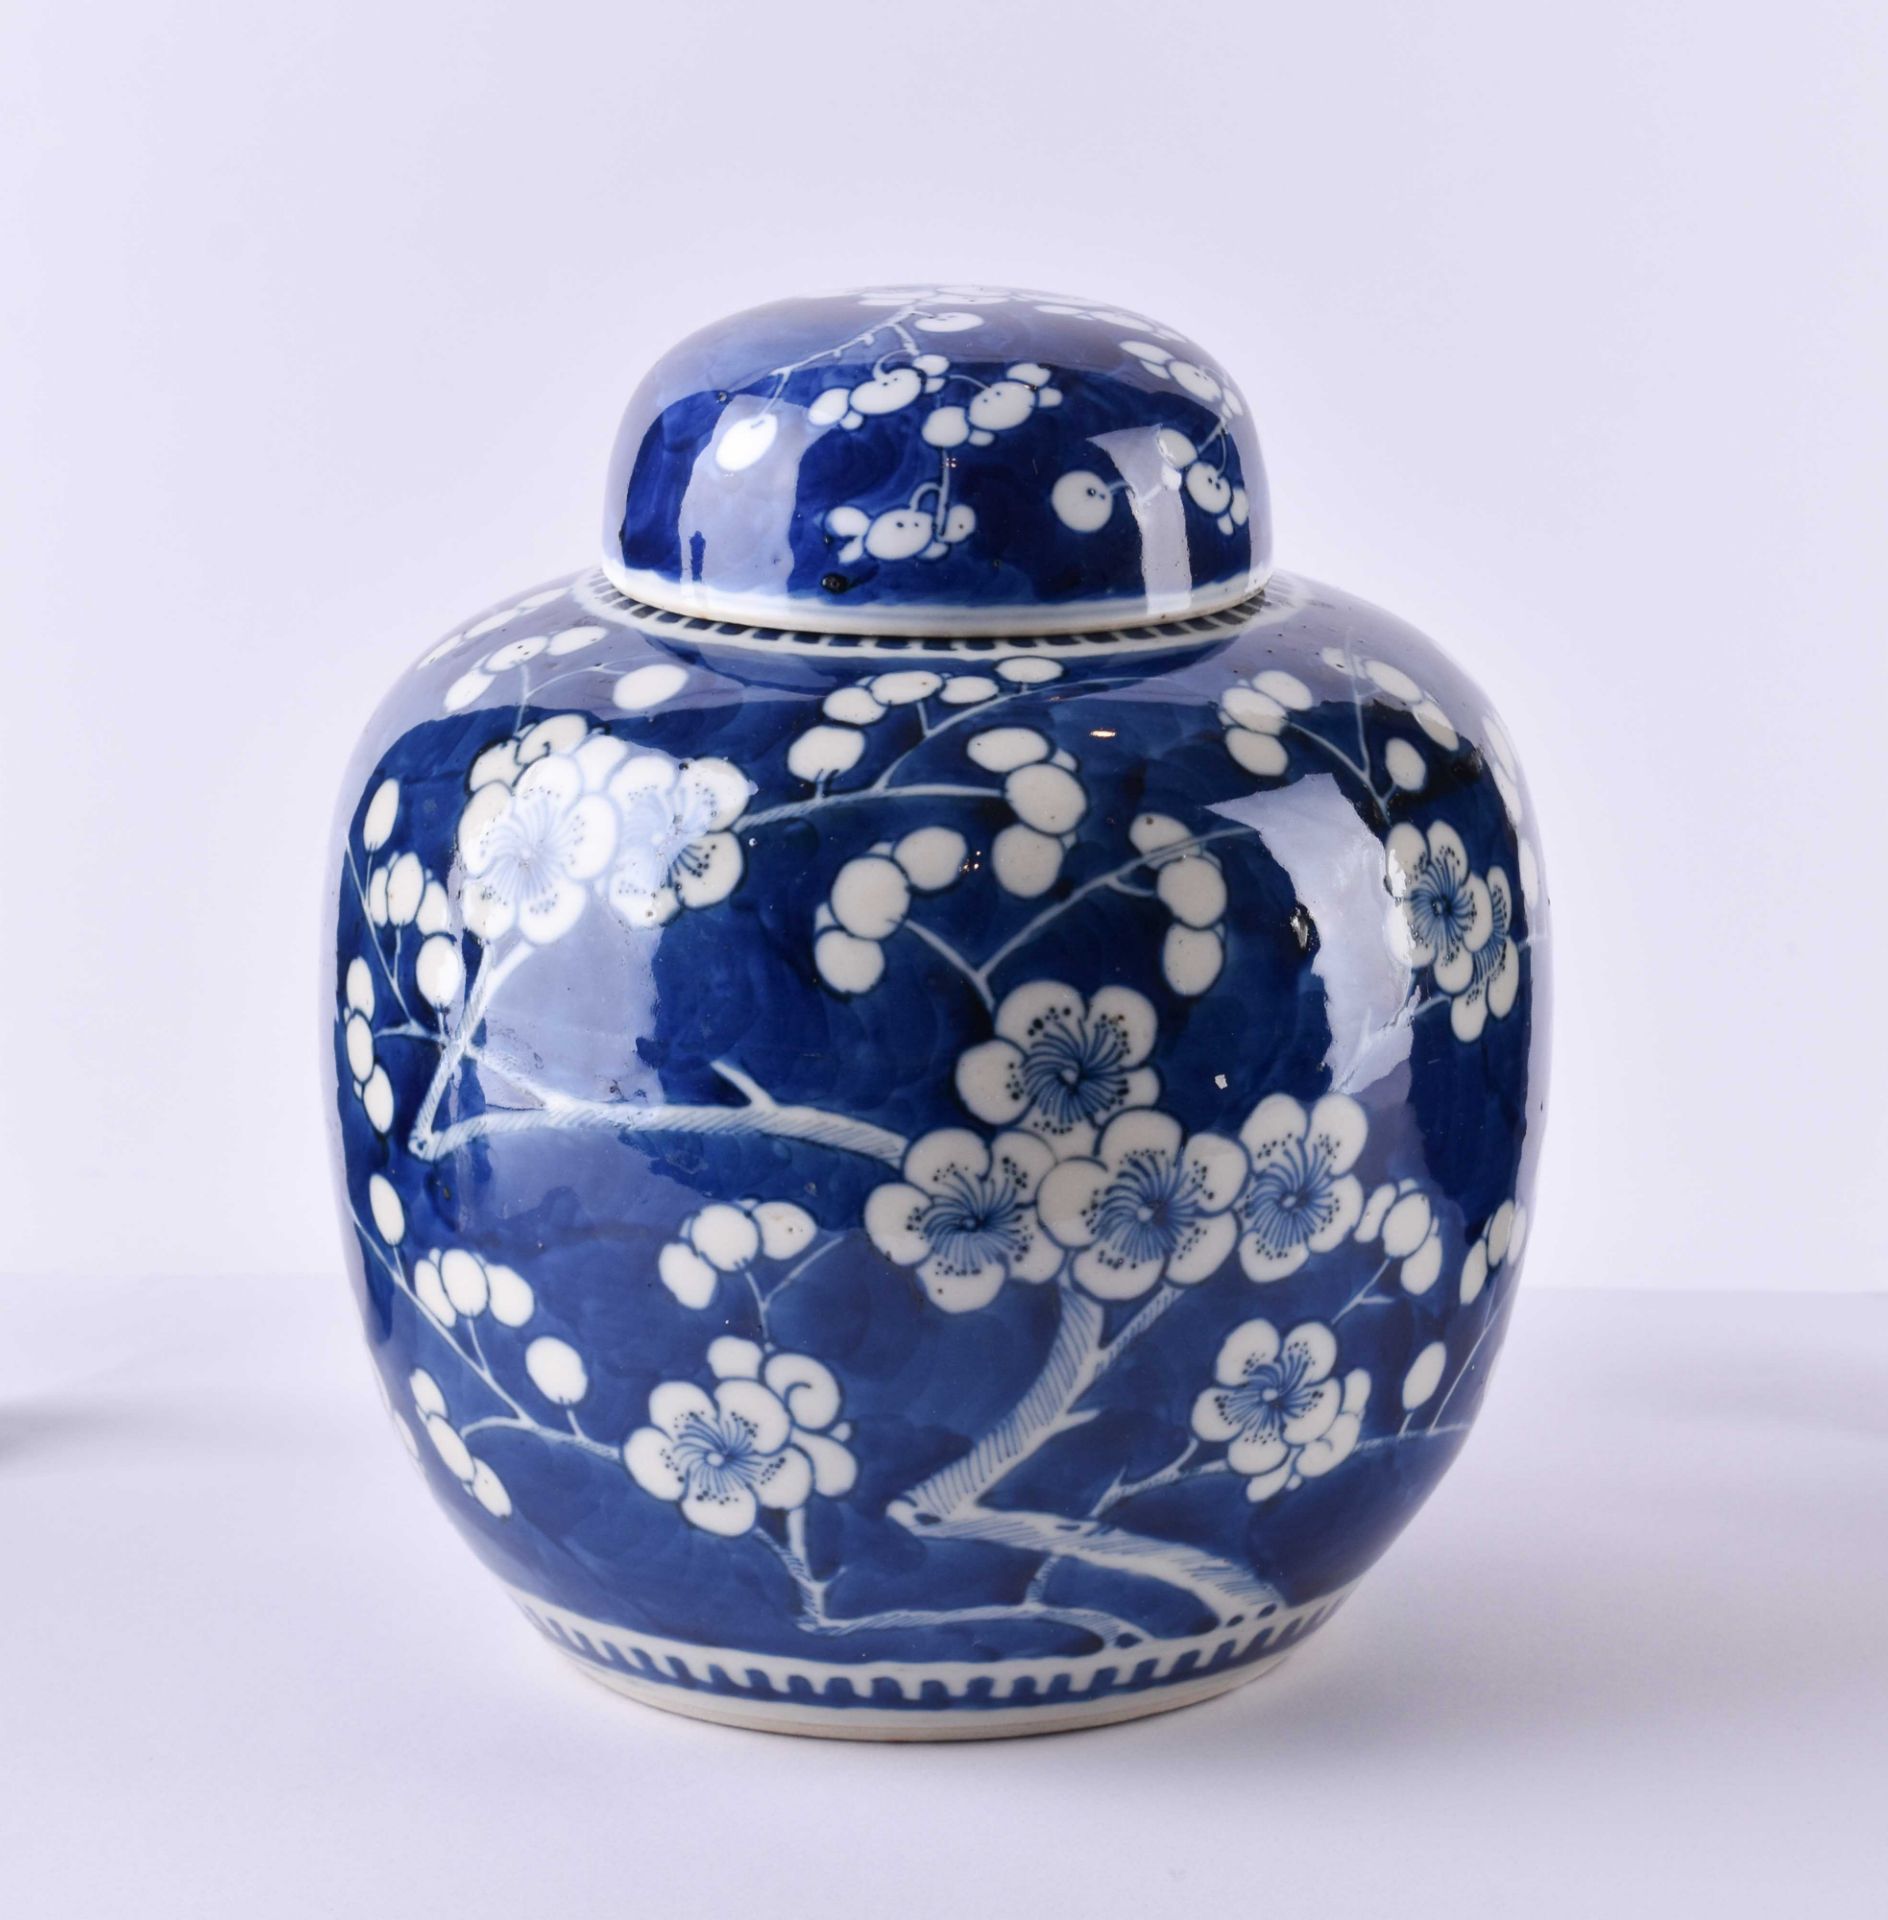 Lidded vase China 19th century